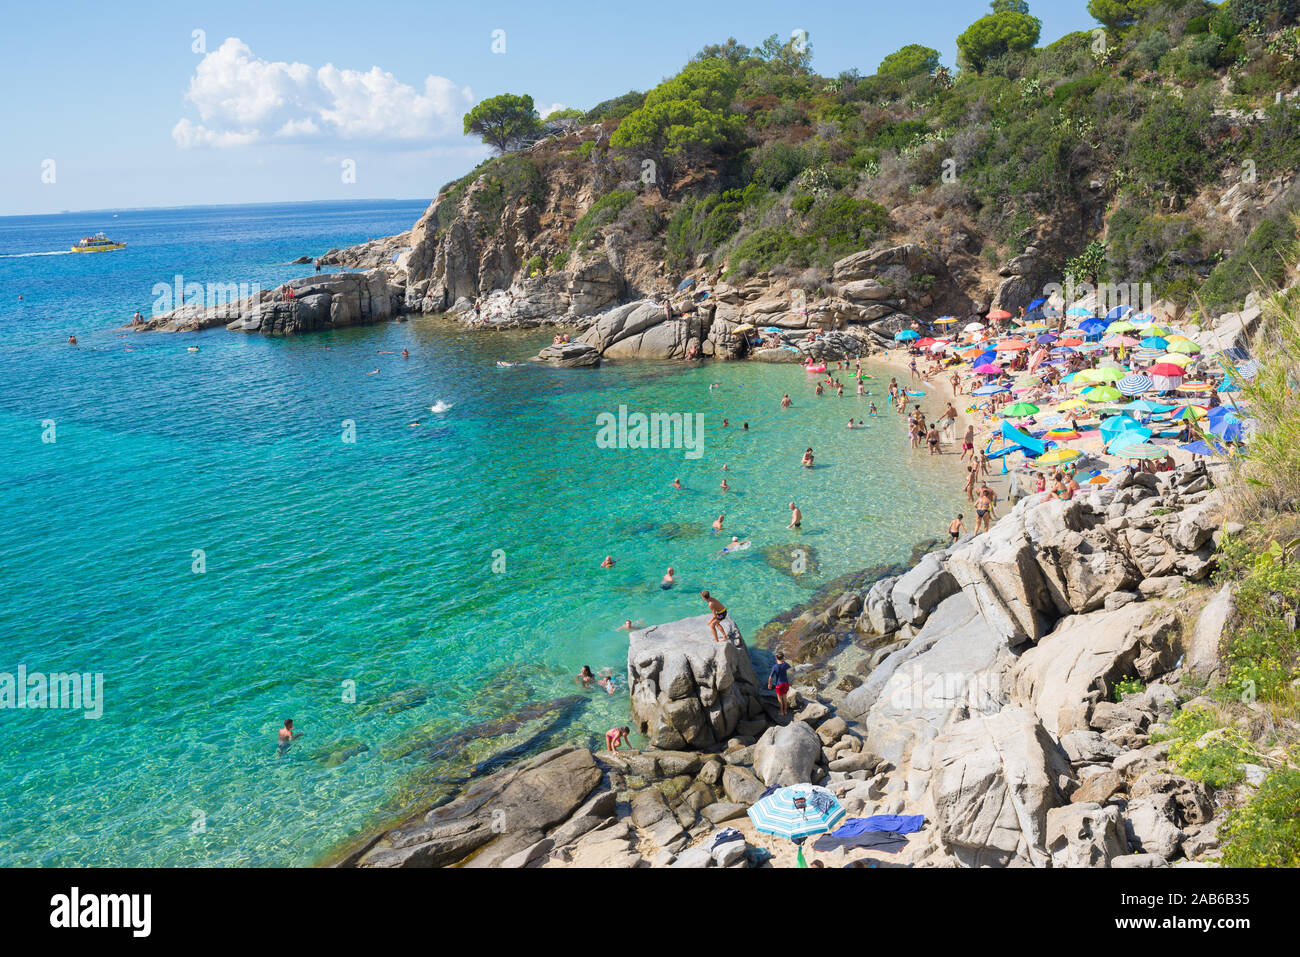 Cavoli, Isola d'Elba, Italy - September 2019: People on the famous Cavoli beach in the Isle of Elba, Tuscany Stock Photo